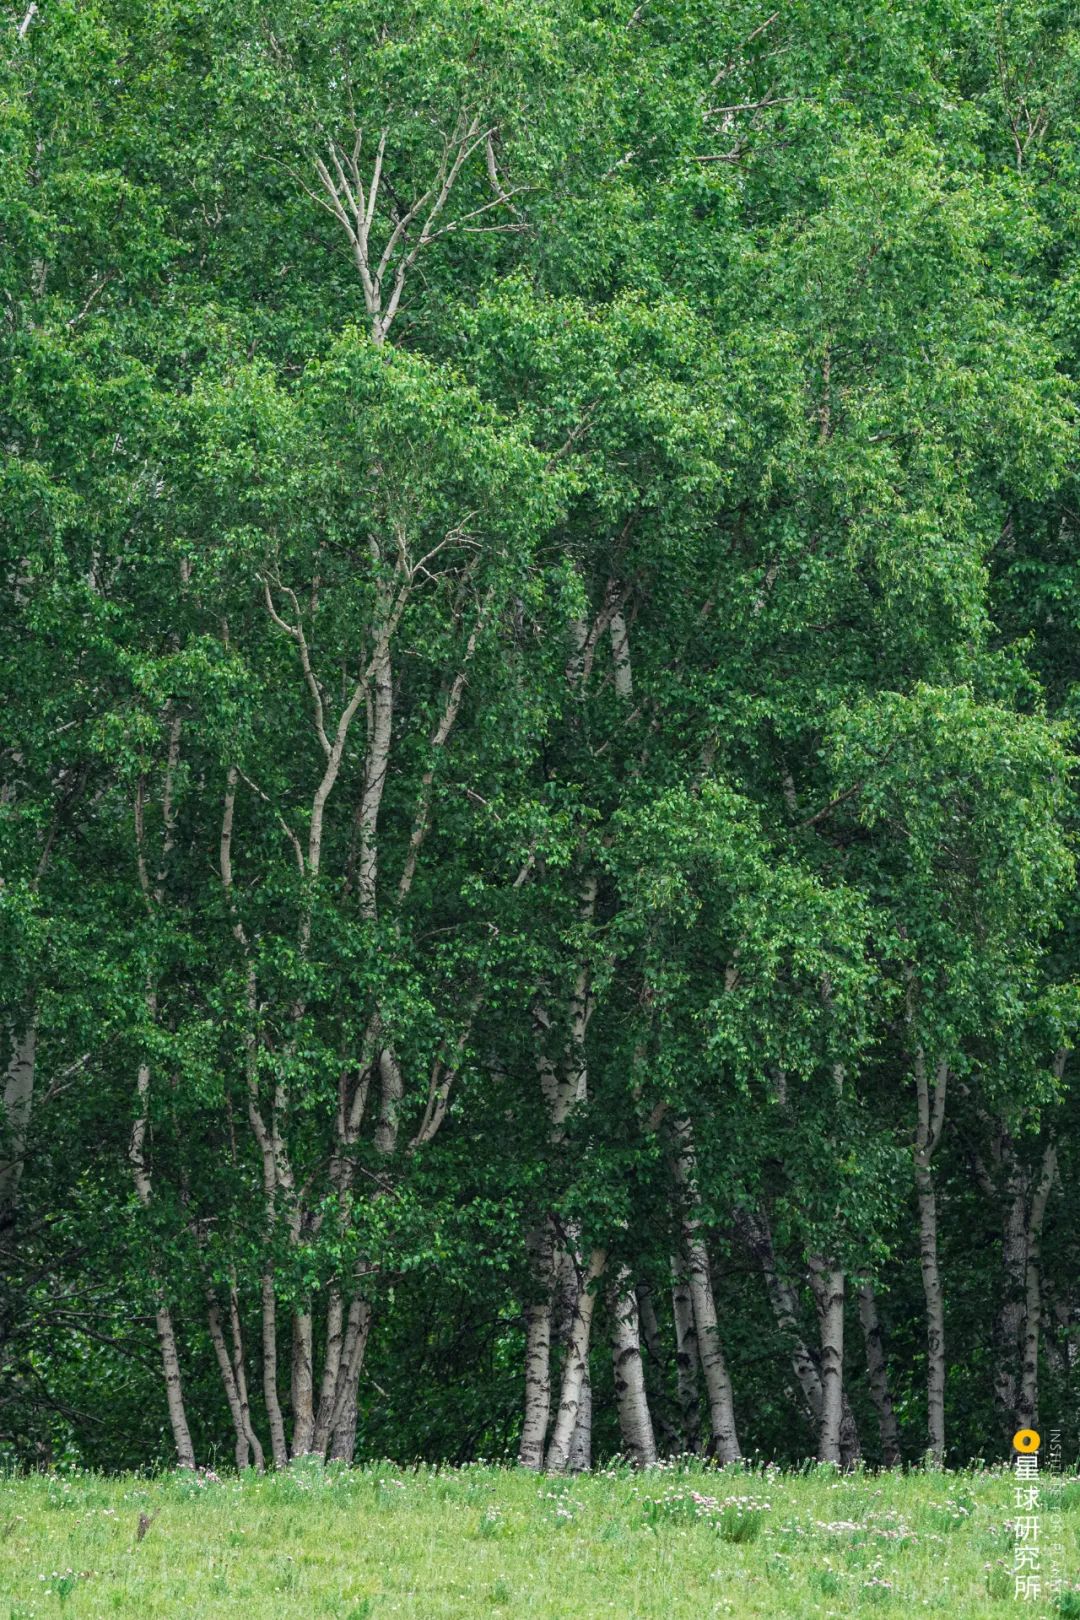 植樹造林，如何改變中國？